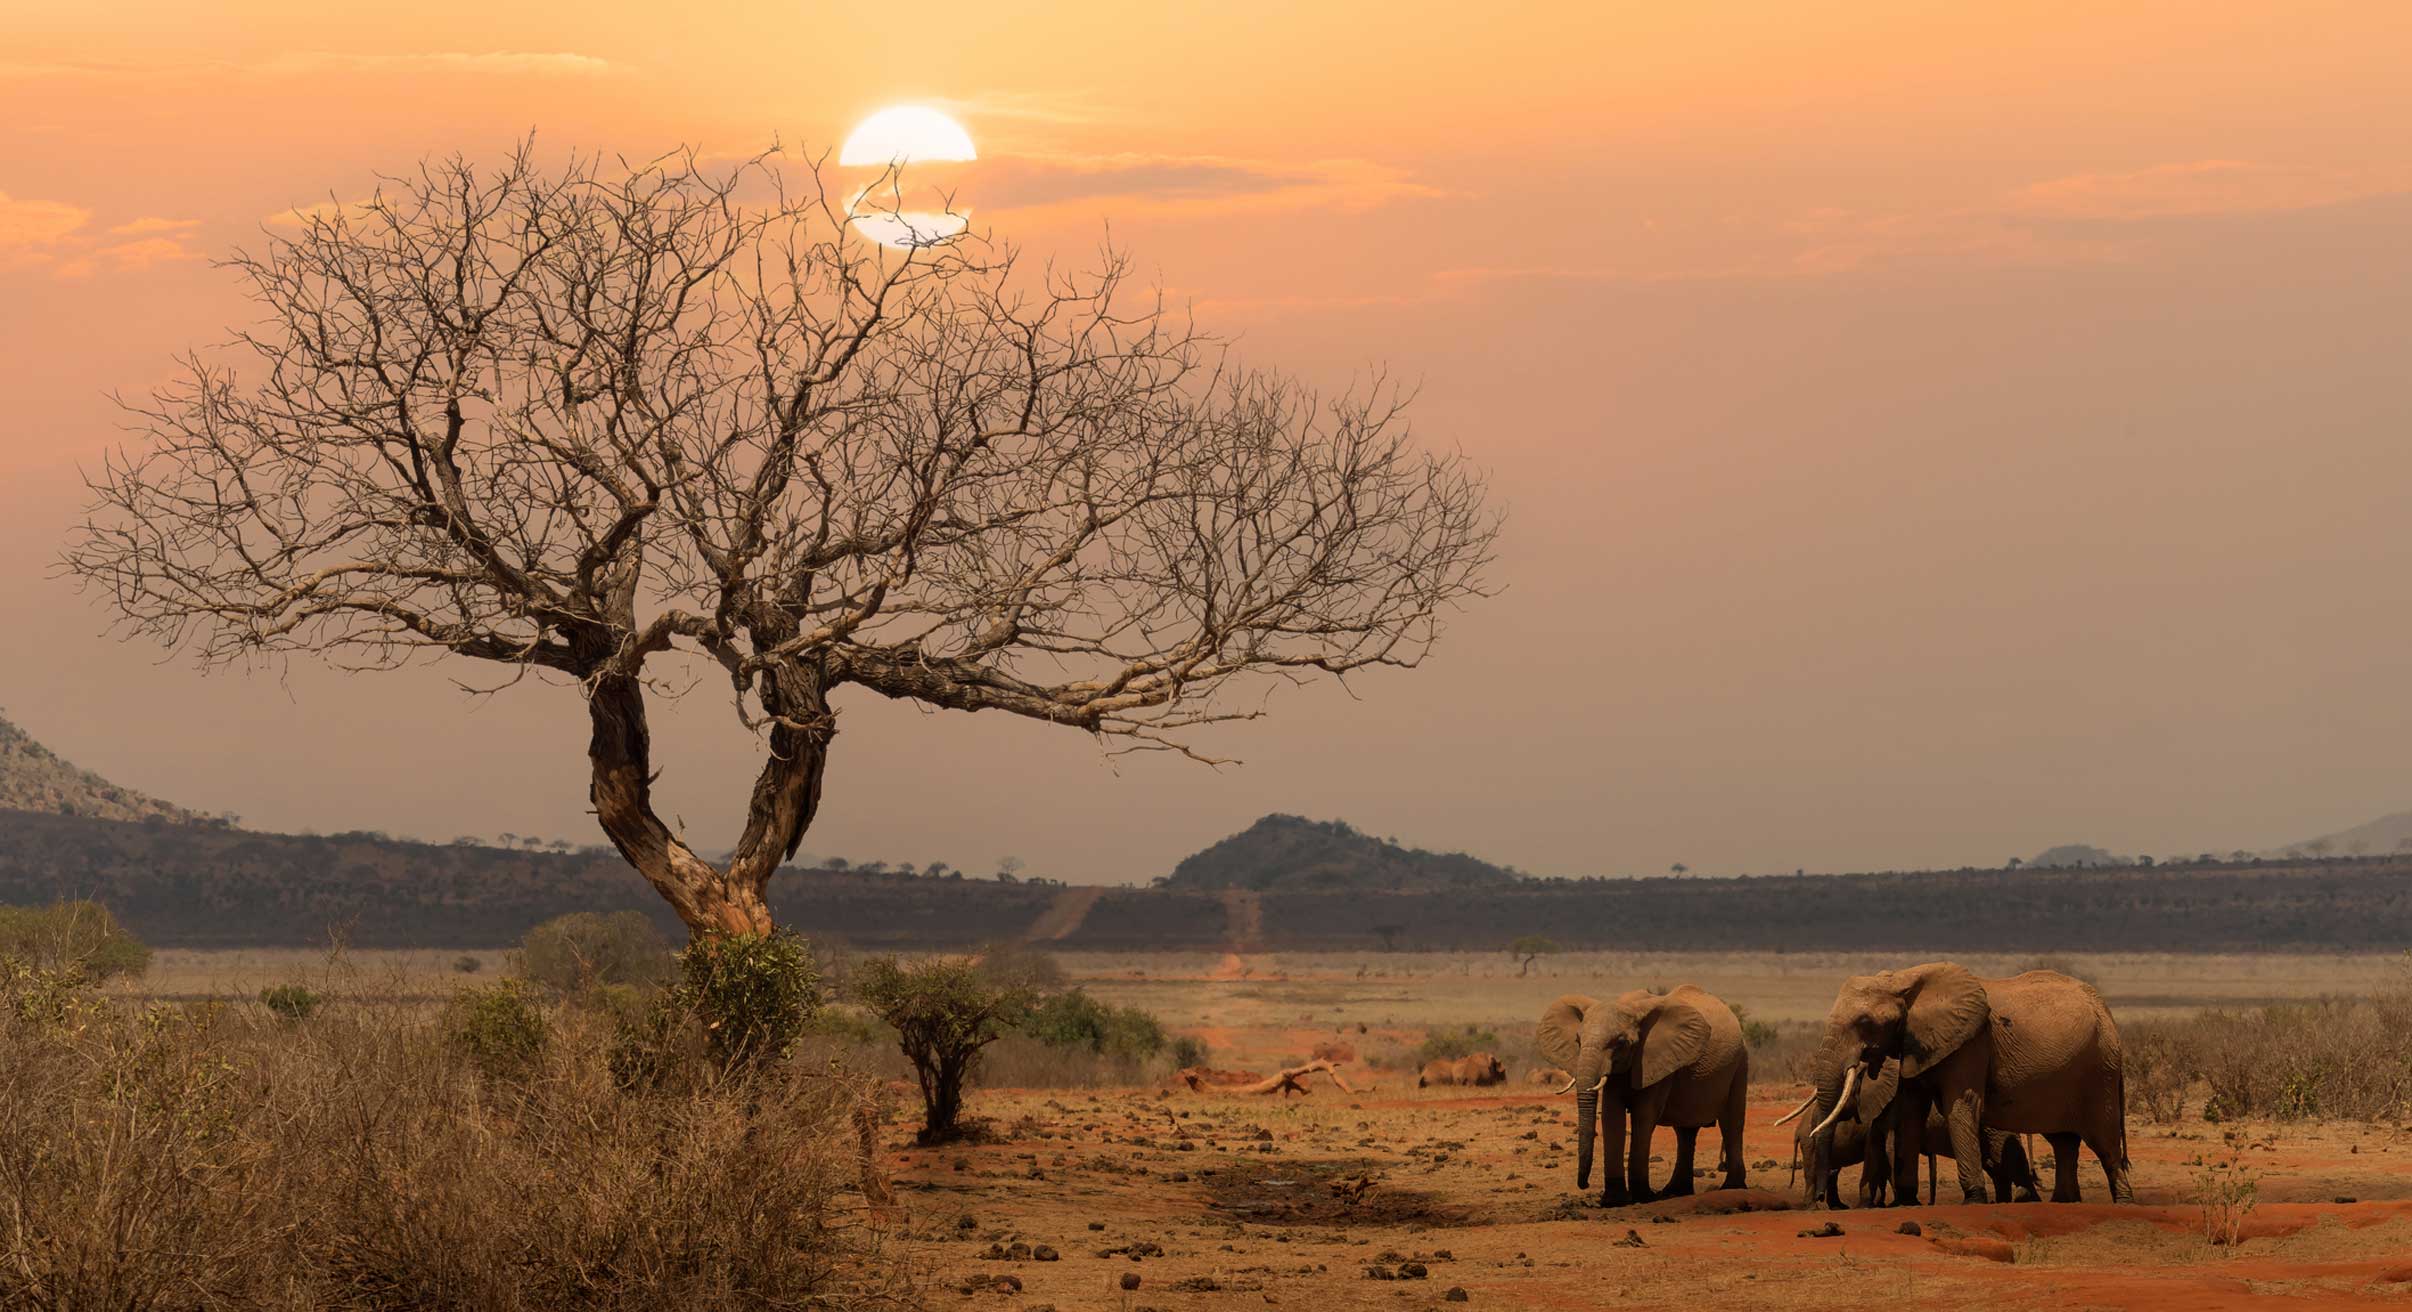 Elephants in Tsavo East National Park at sunset in Kenya